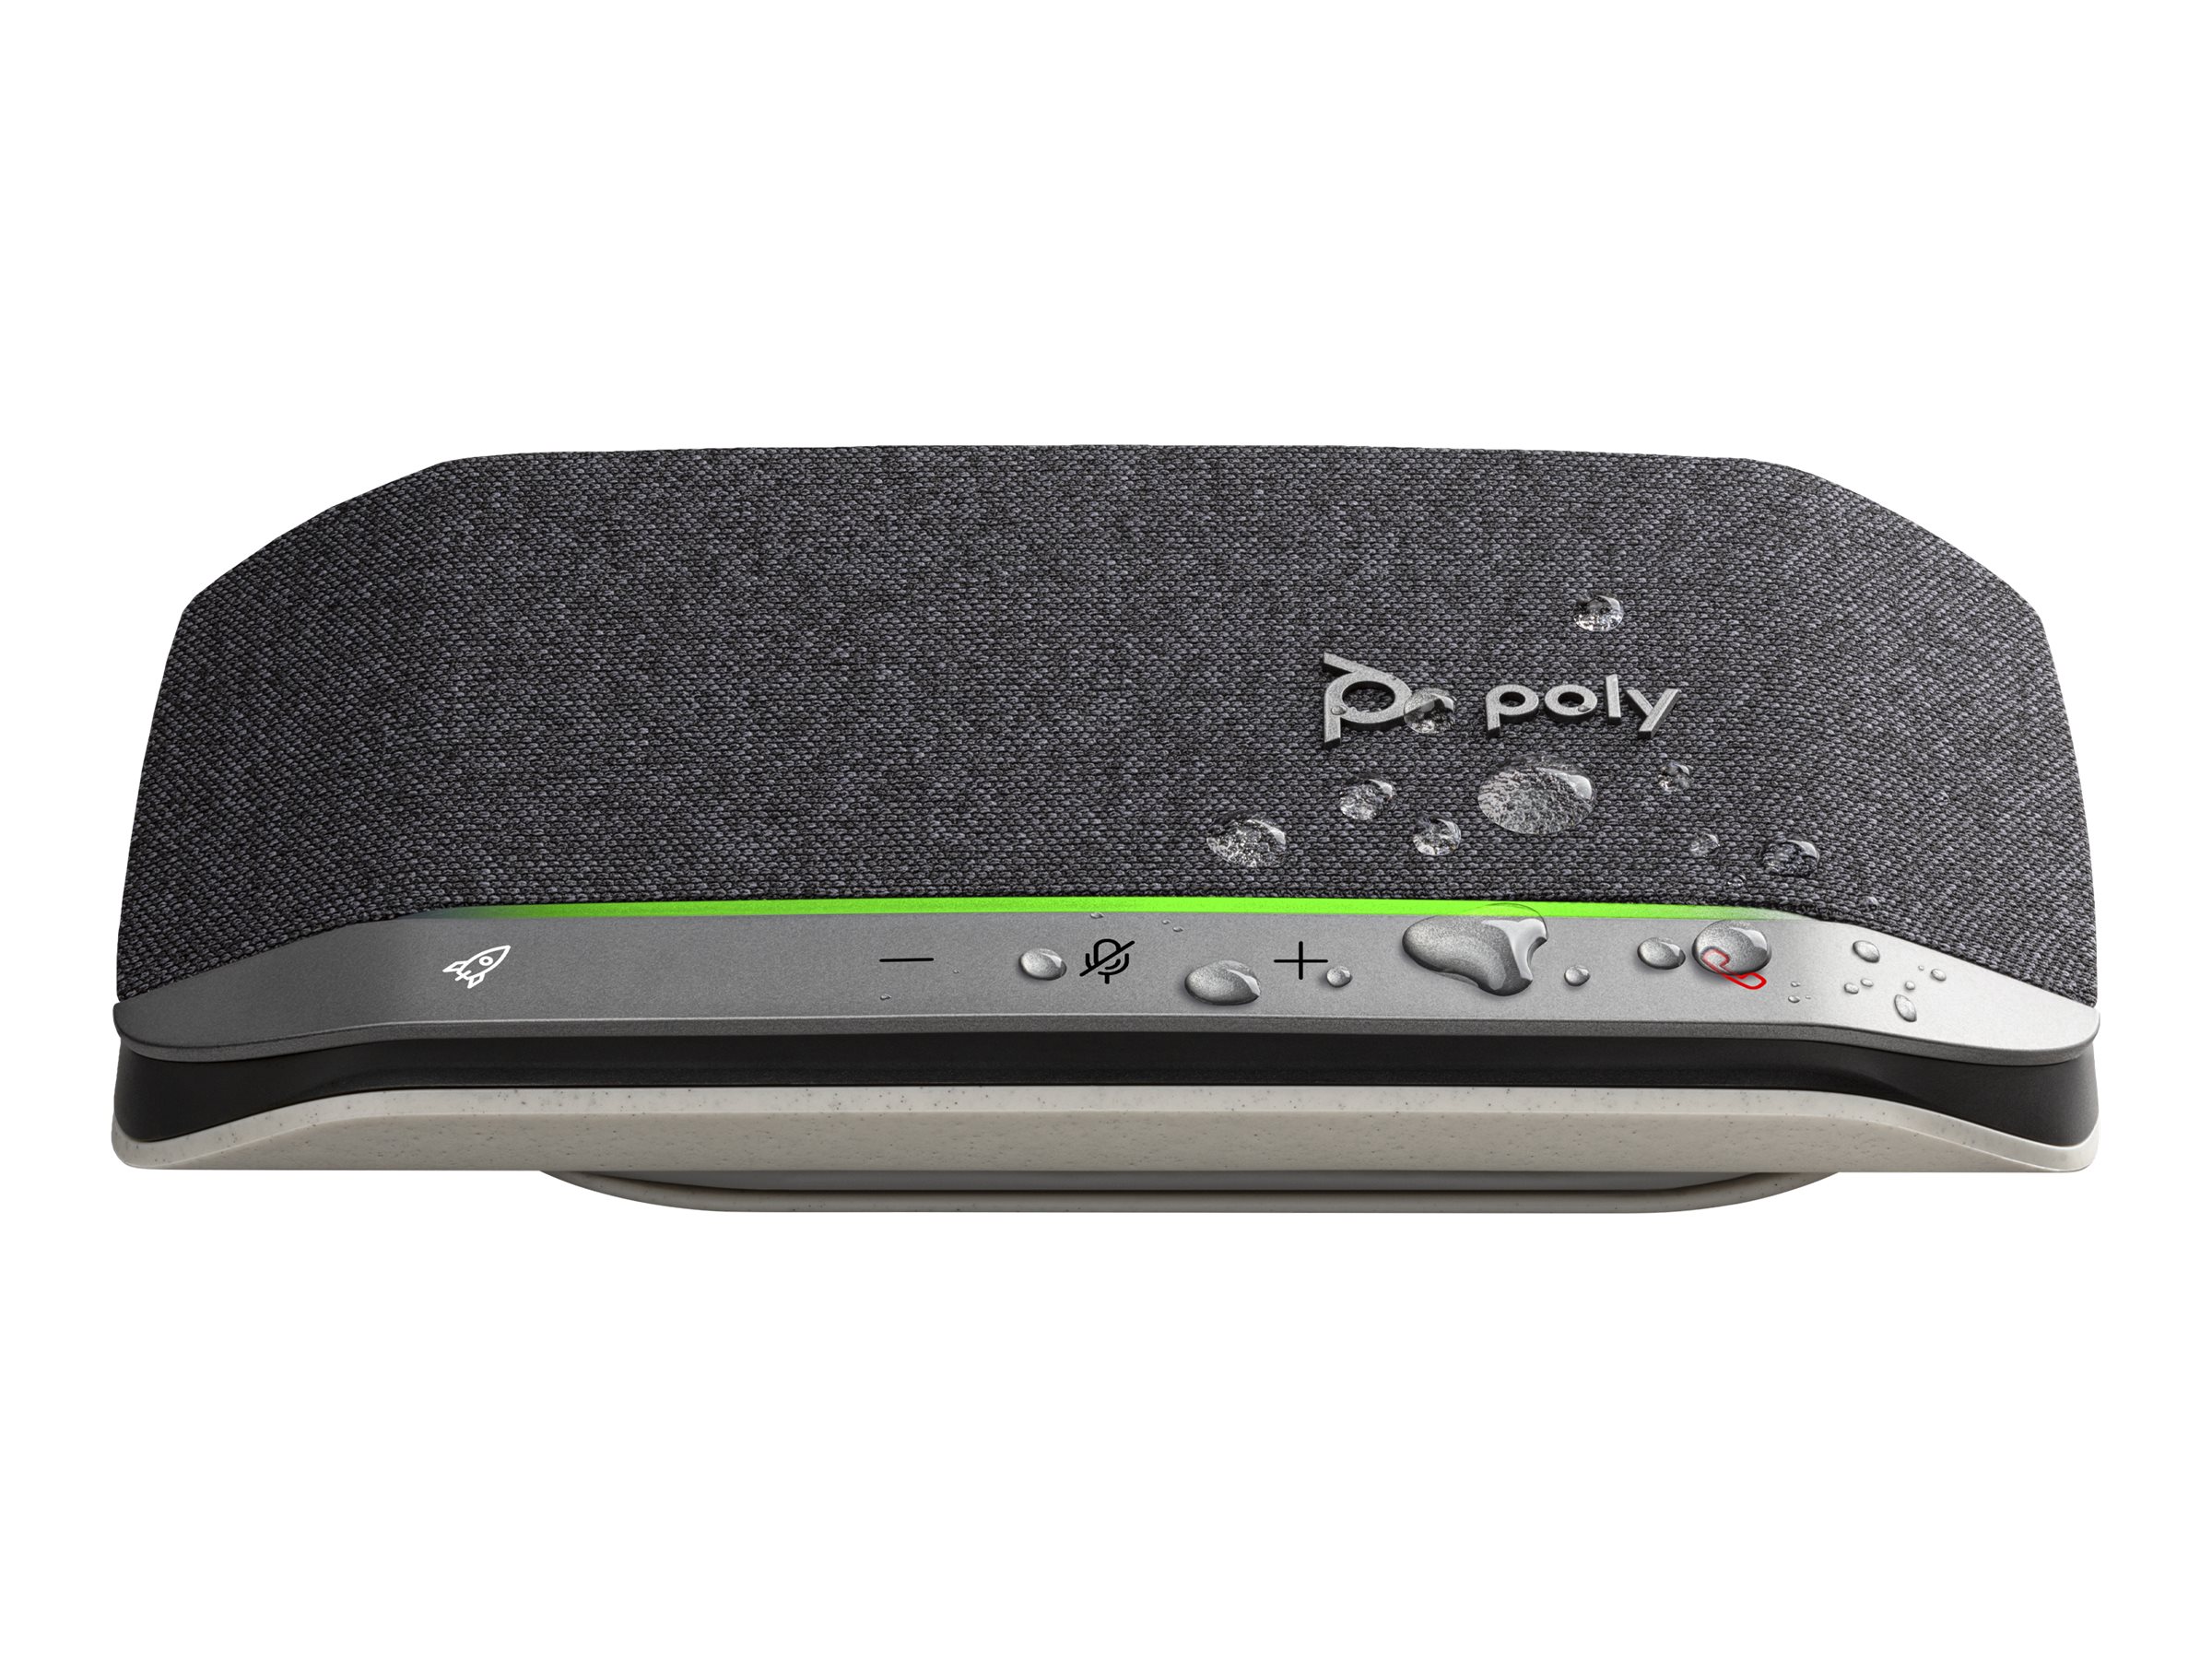 Poly Sync 20 - Haut-parleur intelligent - Bluetooth - sans fil, filaire - USB-C, USB-A - noir - certifié Zoom - 7F0J7AA - Speakerphones